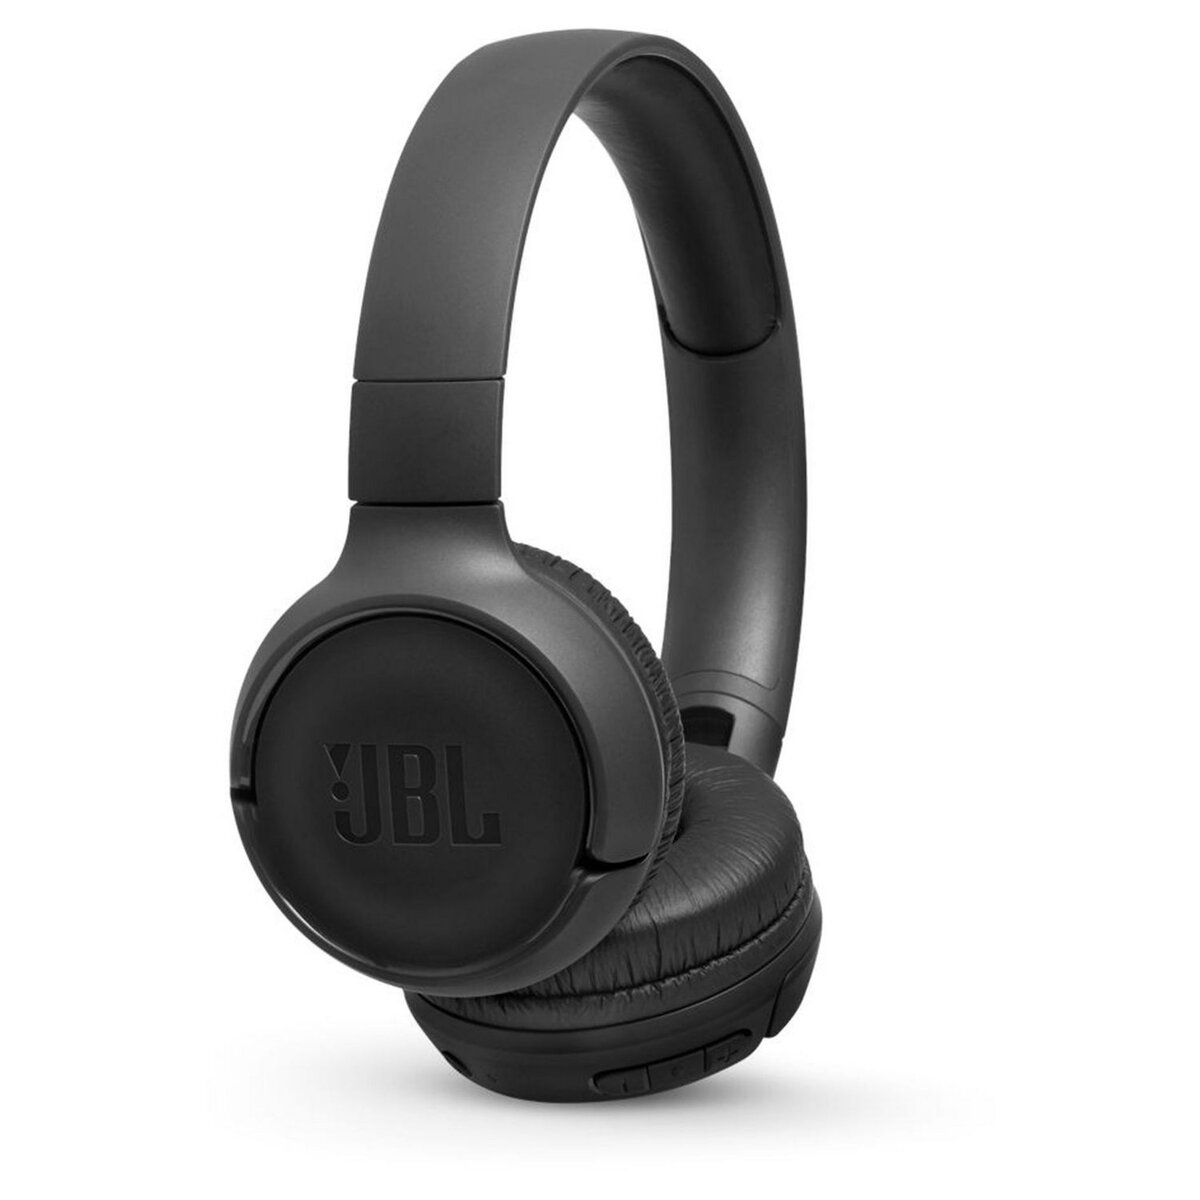 QILIVE Casque audio Bluetooth - Noir - Q1008 pas cher 